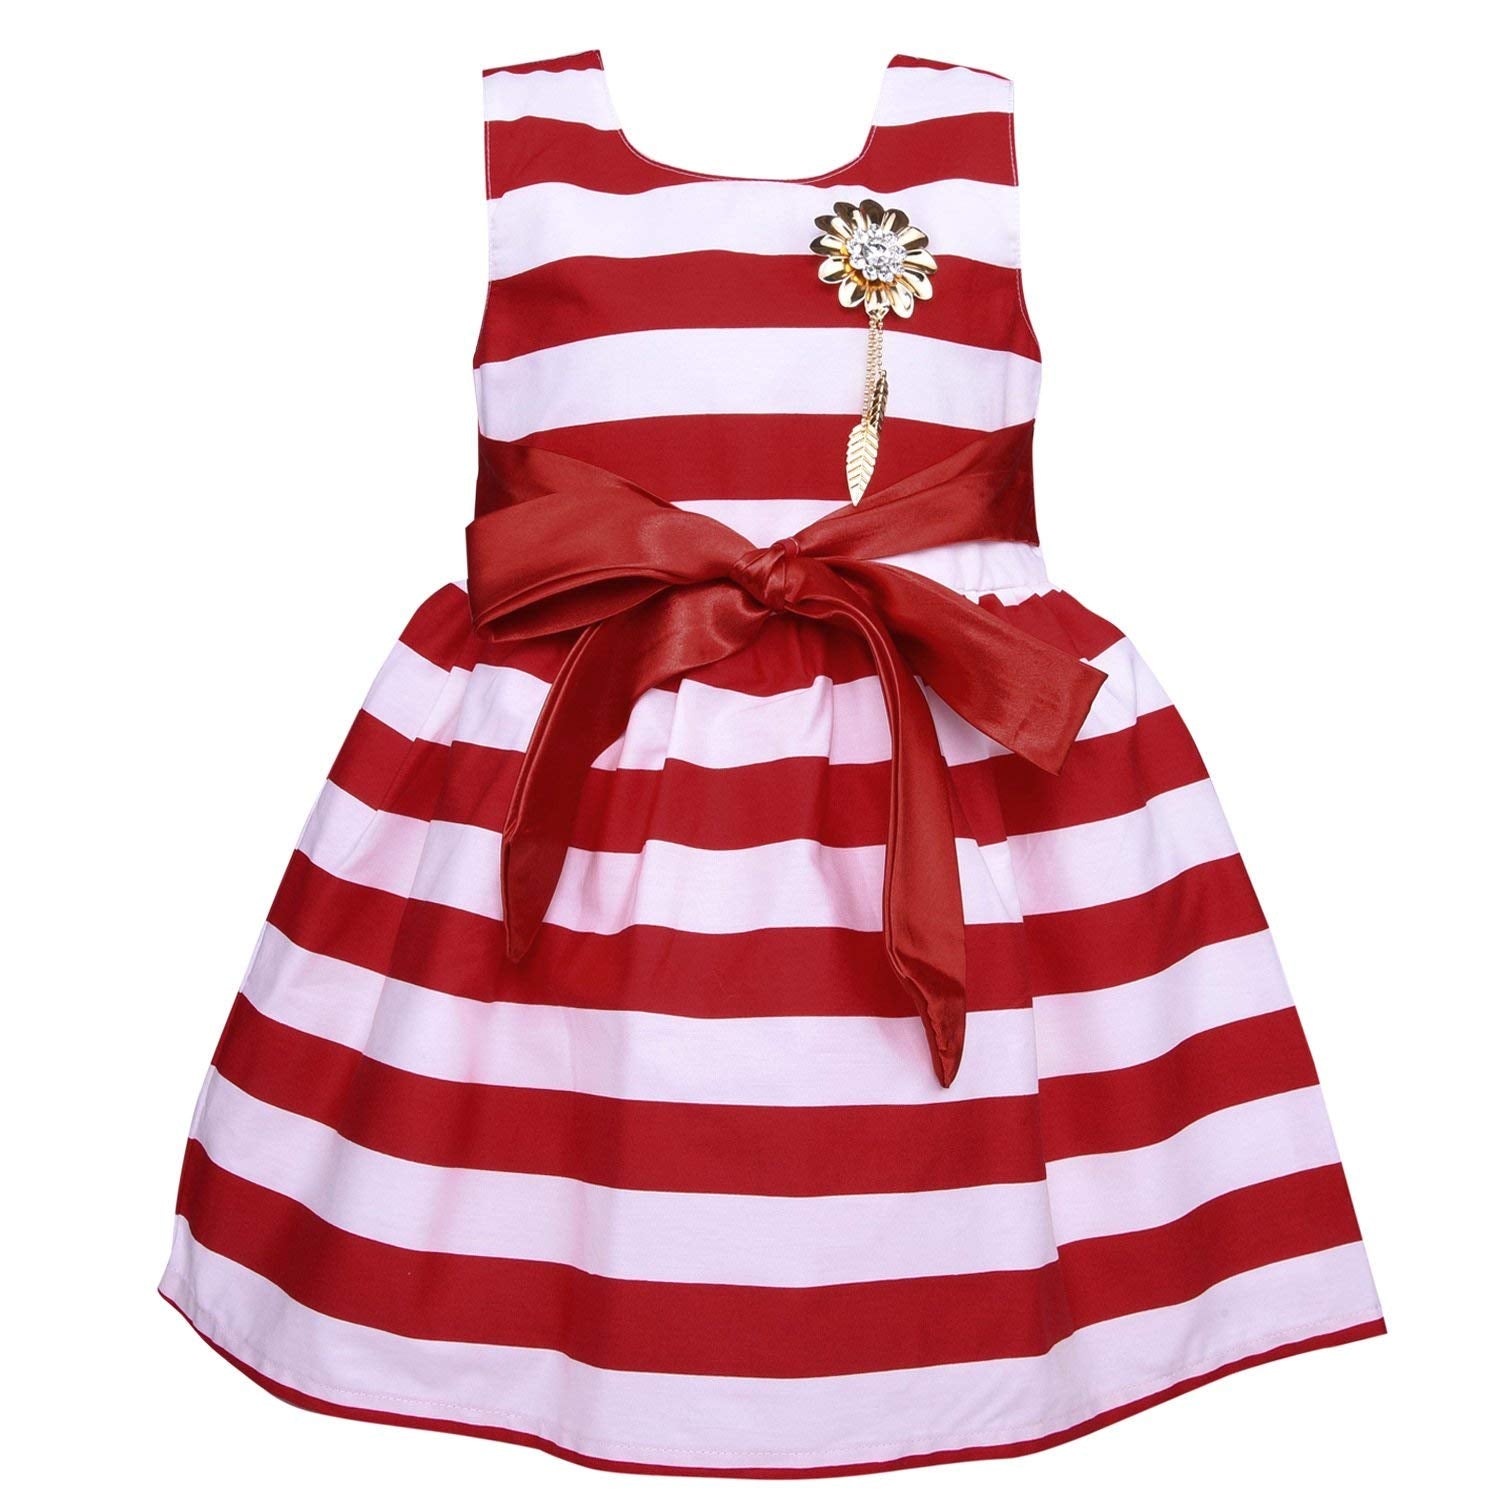 Baby Girls Party wear Frock Dress ctn265rd - Wish Karo Party Wear - frocks Party Wear - baby dress